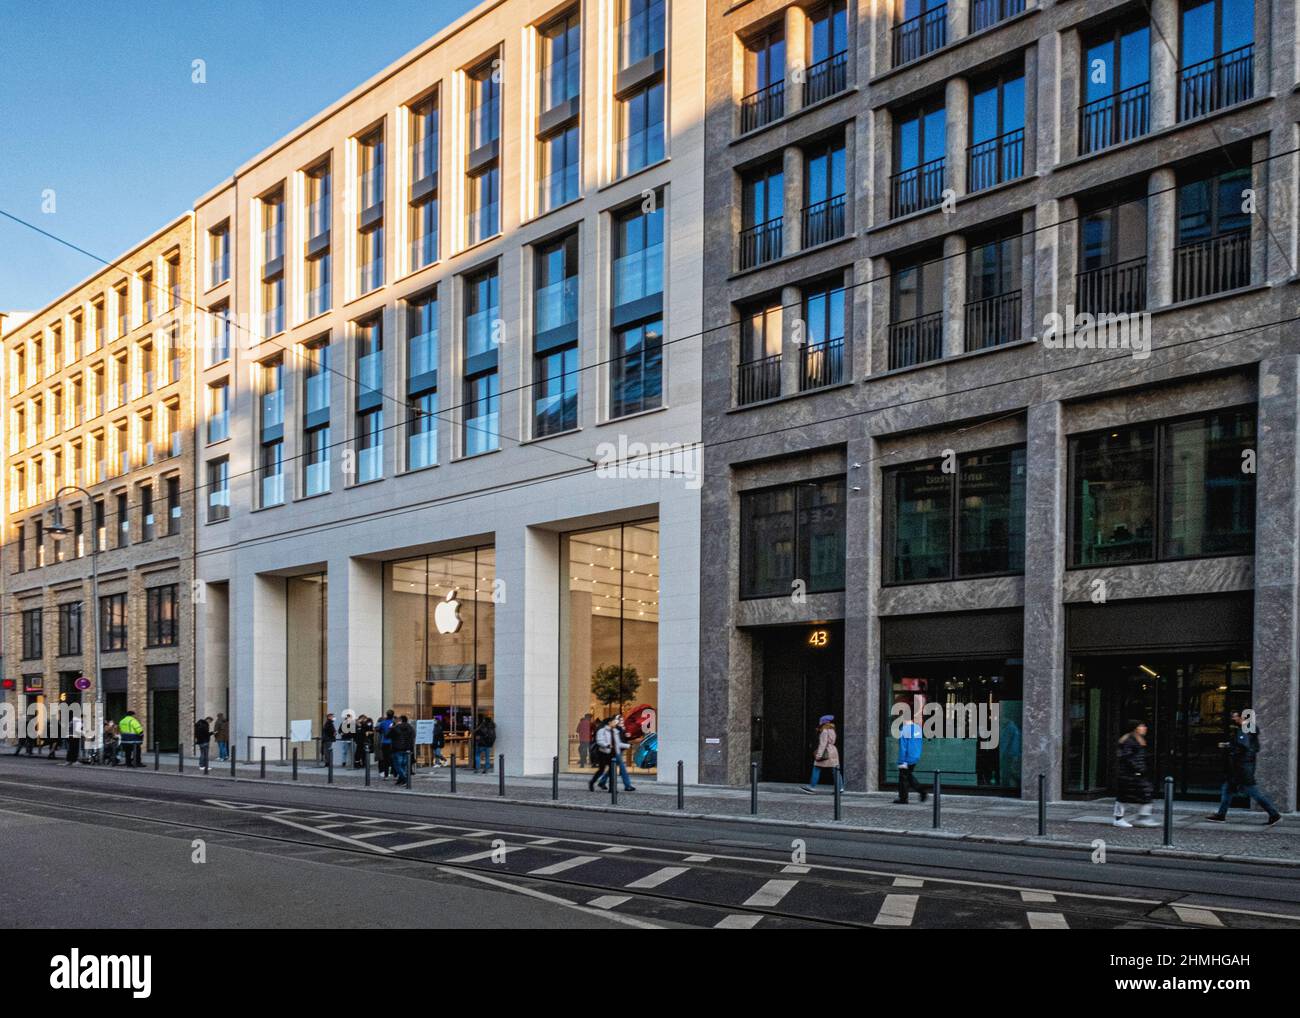 Manzana Rosenthaler. Nueva tienda Apple abierta el 2 de diciembre de 2021 en Rosenthaler Straße 44,Mitte,Berlin Foto de stock